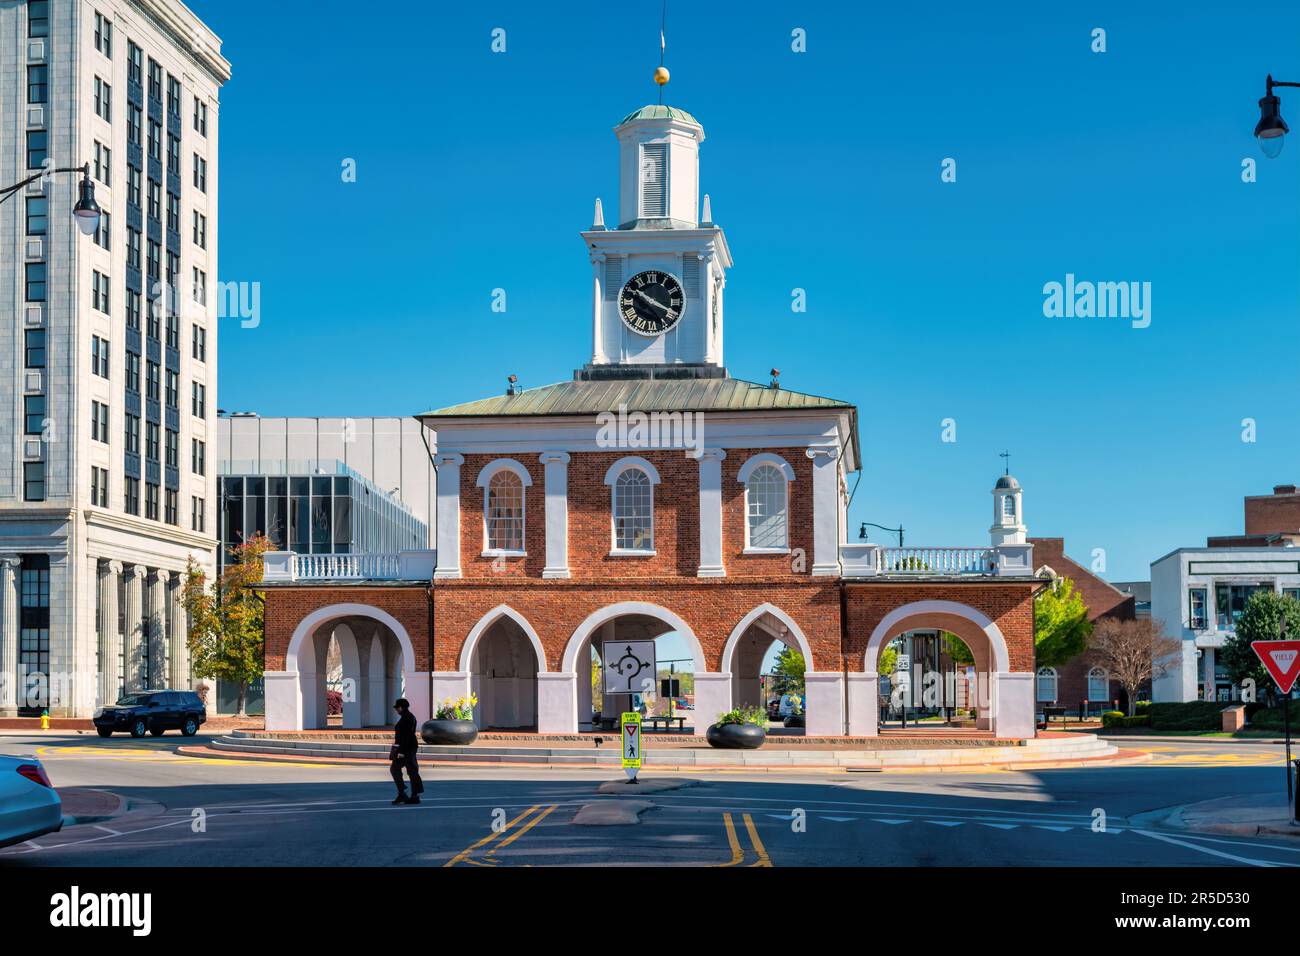 Le marché historique dans le centre-ville de Fayetteville, Caroline du Nord, États-Unis Banque D'Images